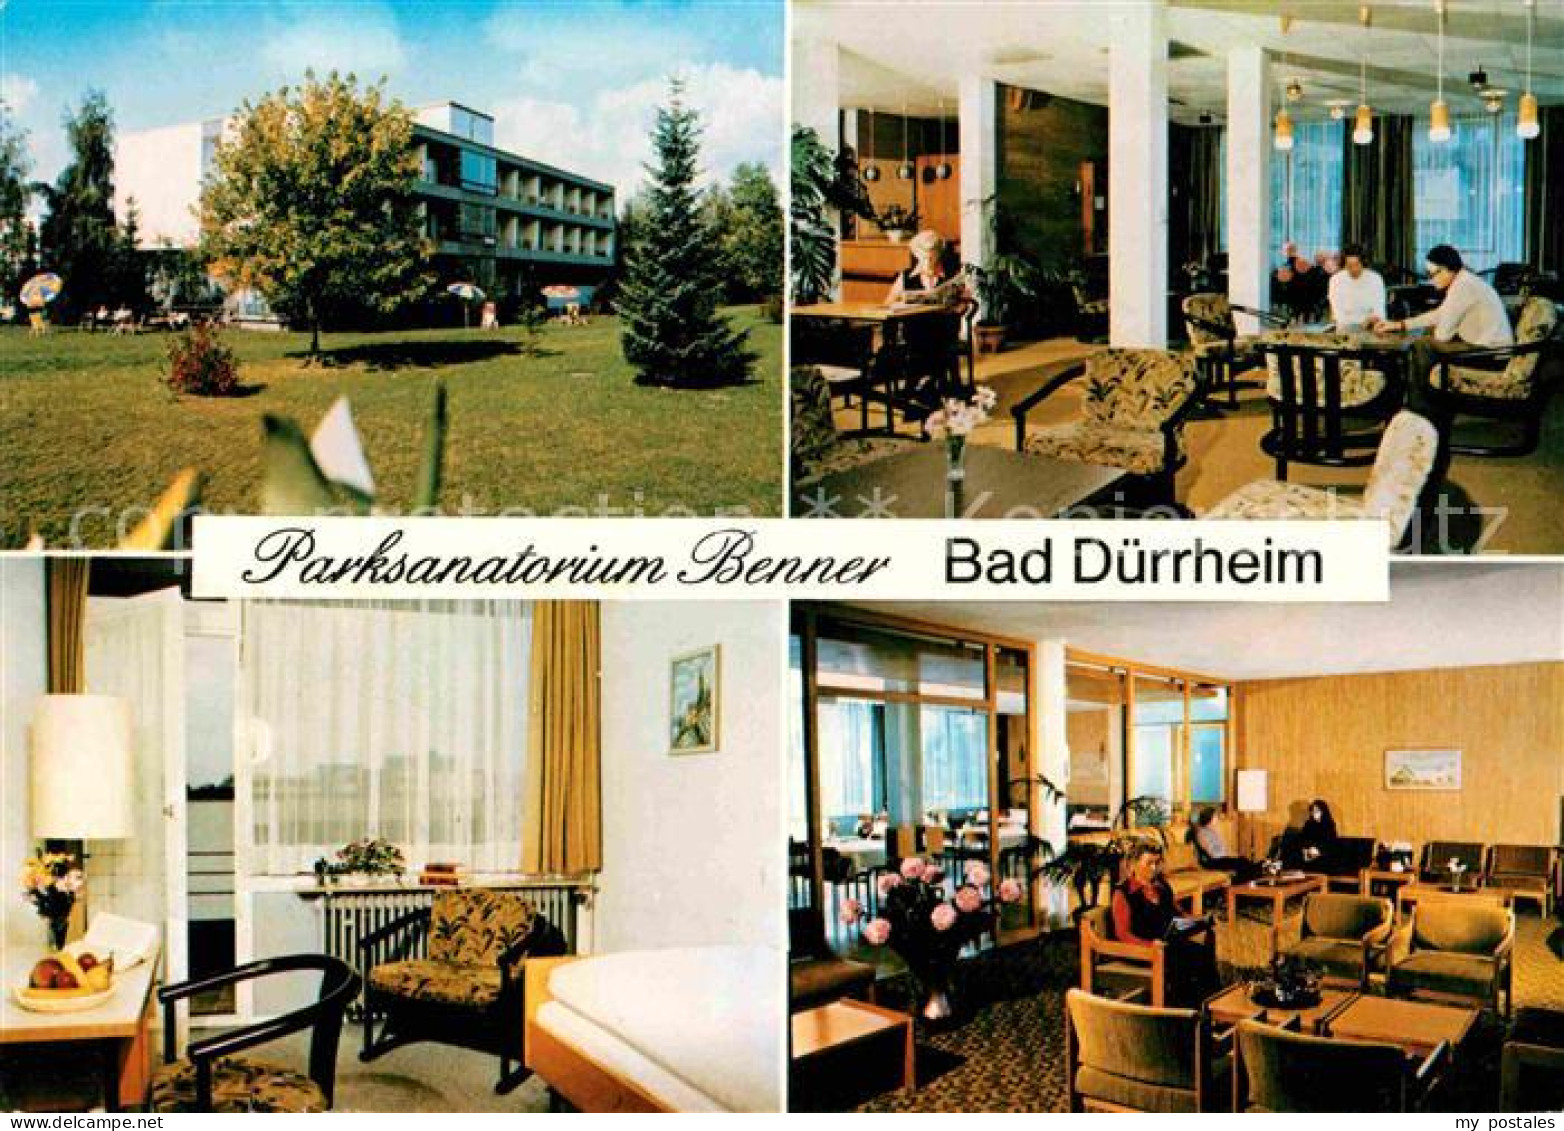 72760264 Bad Duerrheim Parksanatorium Benner Bad Duerrheim - Bad Dürrheim